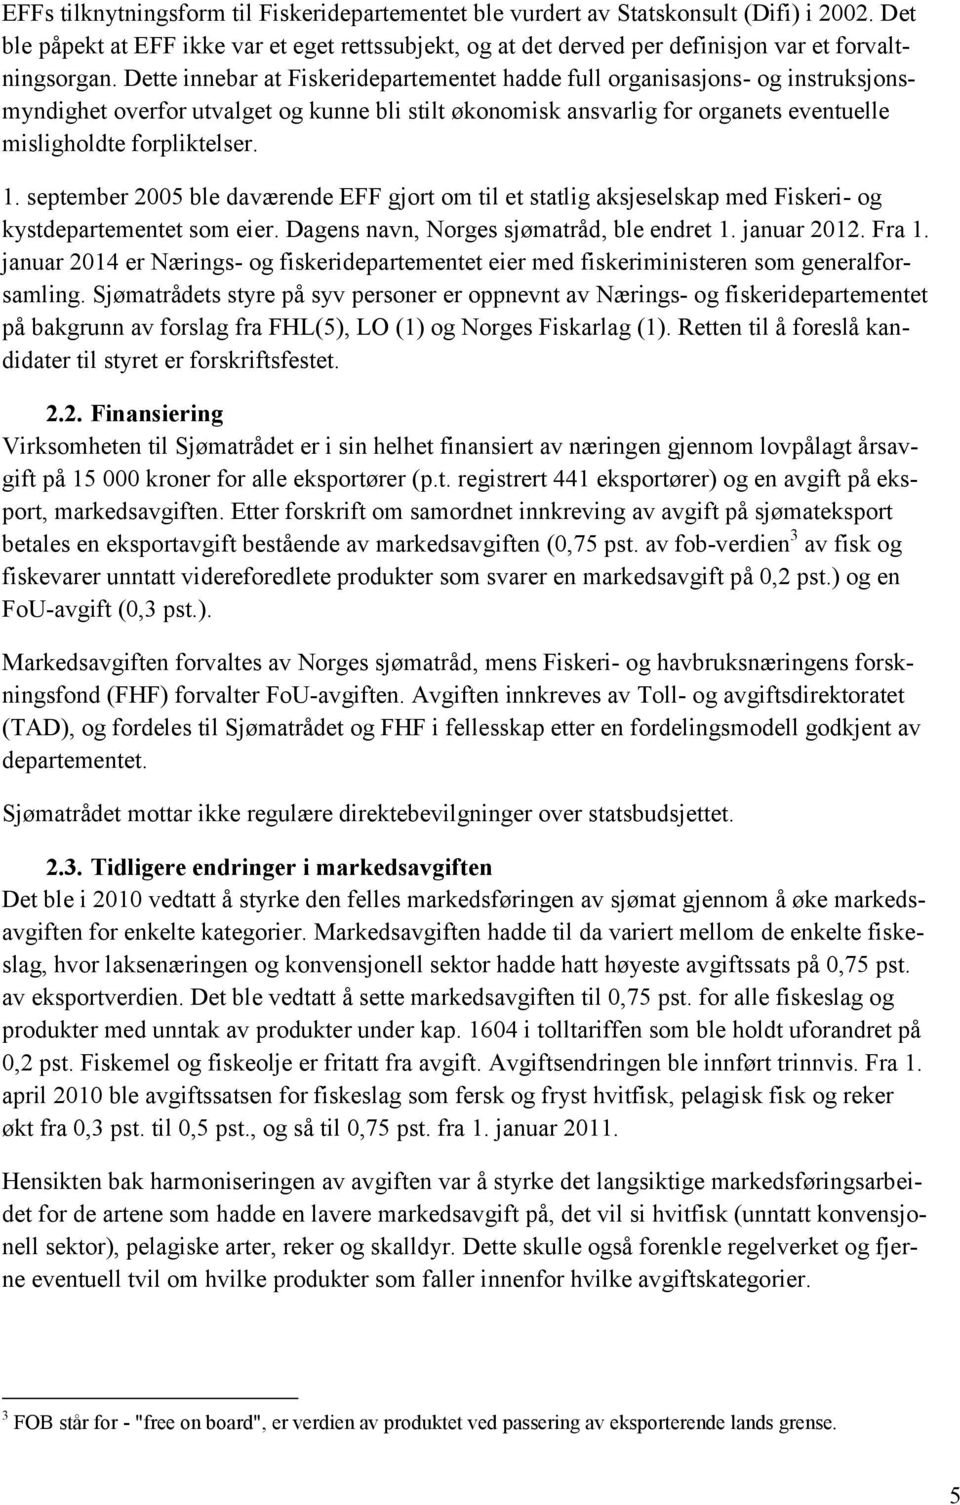 september 2005 ble daværende EFF gjort om til et statlig aksjeselskap med Fiskeri- og kystdepartementet som eier. Dagens navn, Norges sjømatråd, ble endret 1. januar 2012. Fra 1.